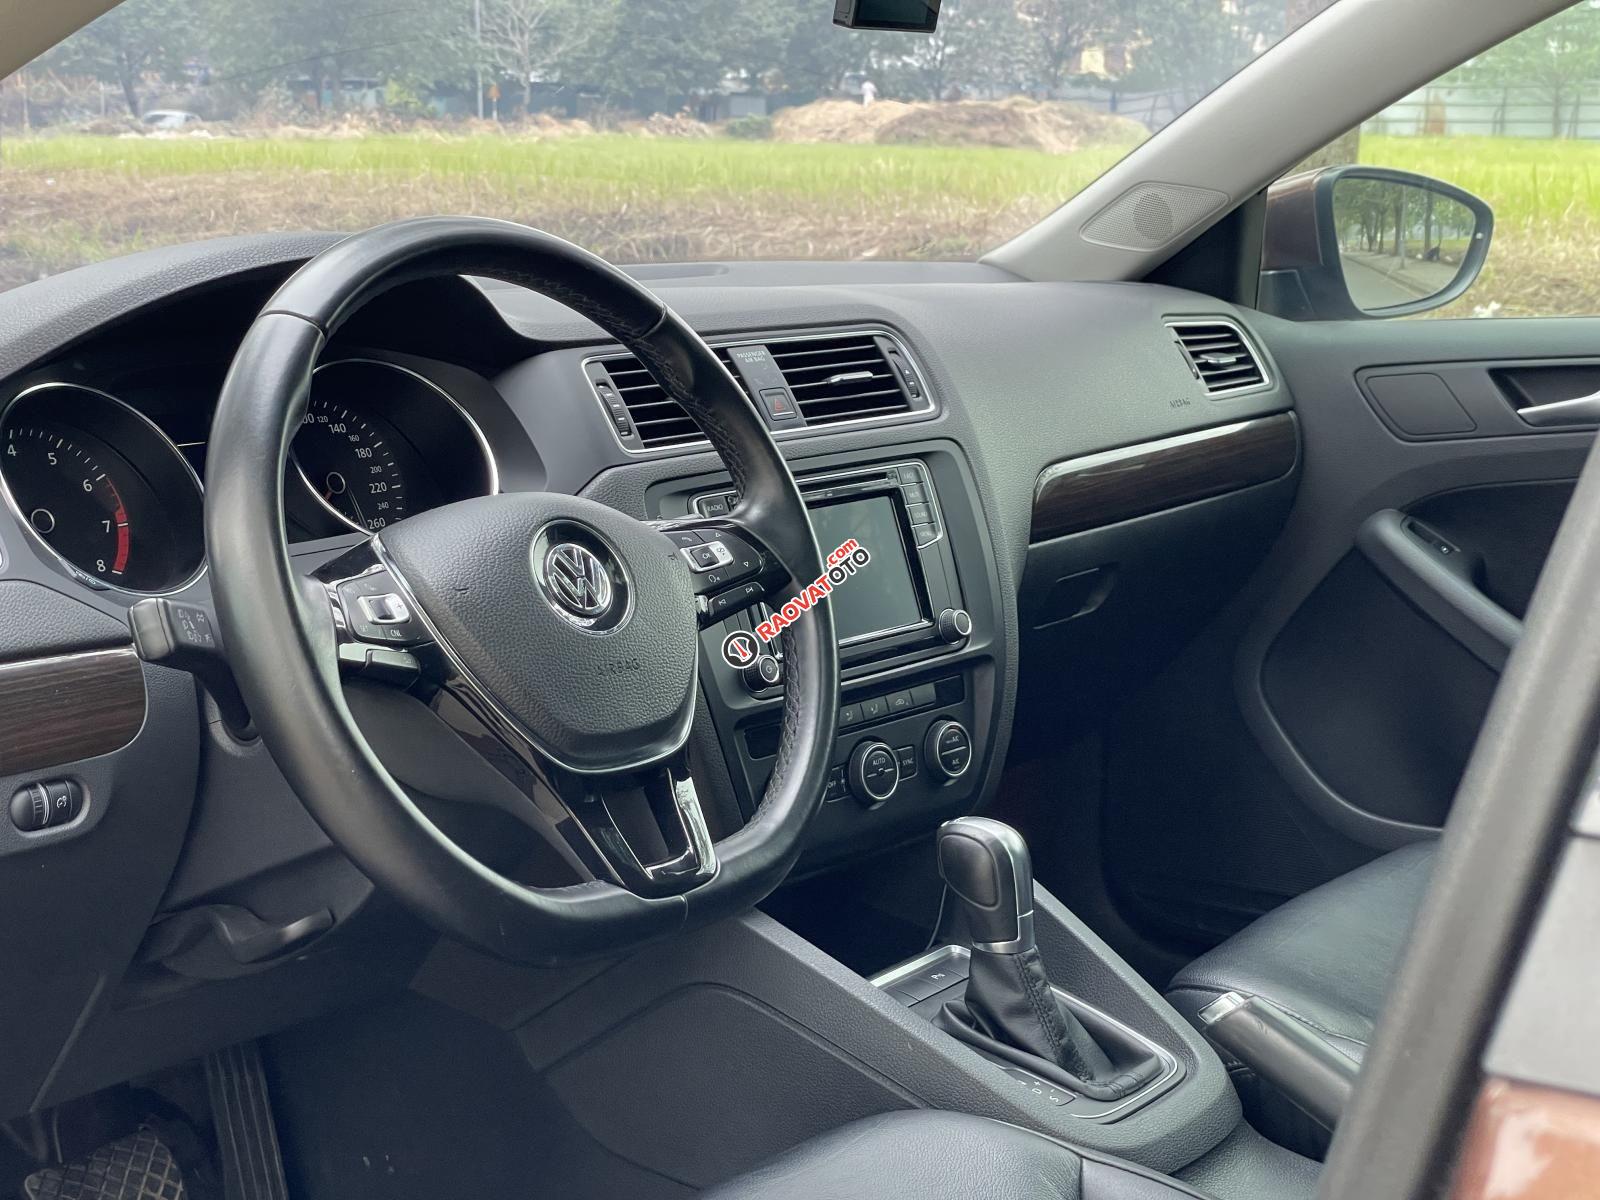 Cần bán Volkswagen Jetta 1.4 I4 TSI nhập khẩu Đức, đk 2018 - hỗ trợ trả góp lên đến 70%-0